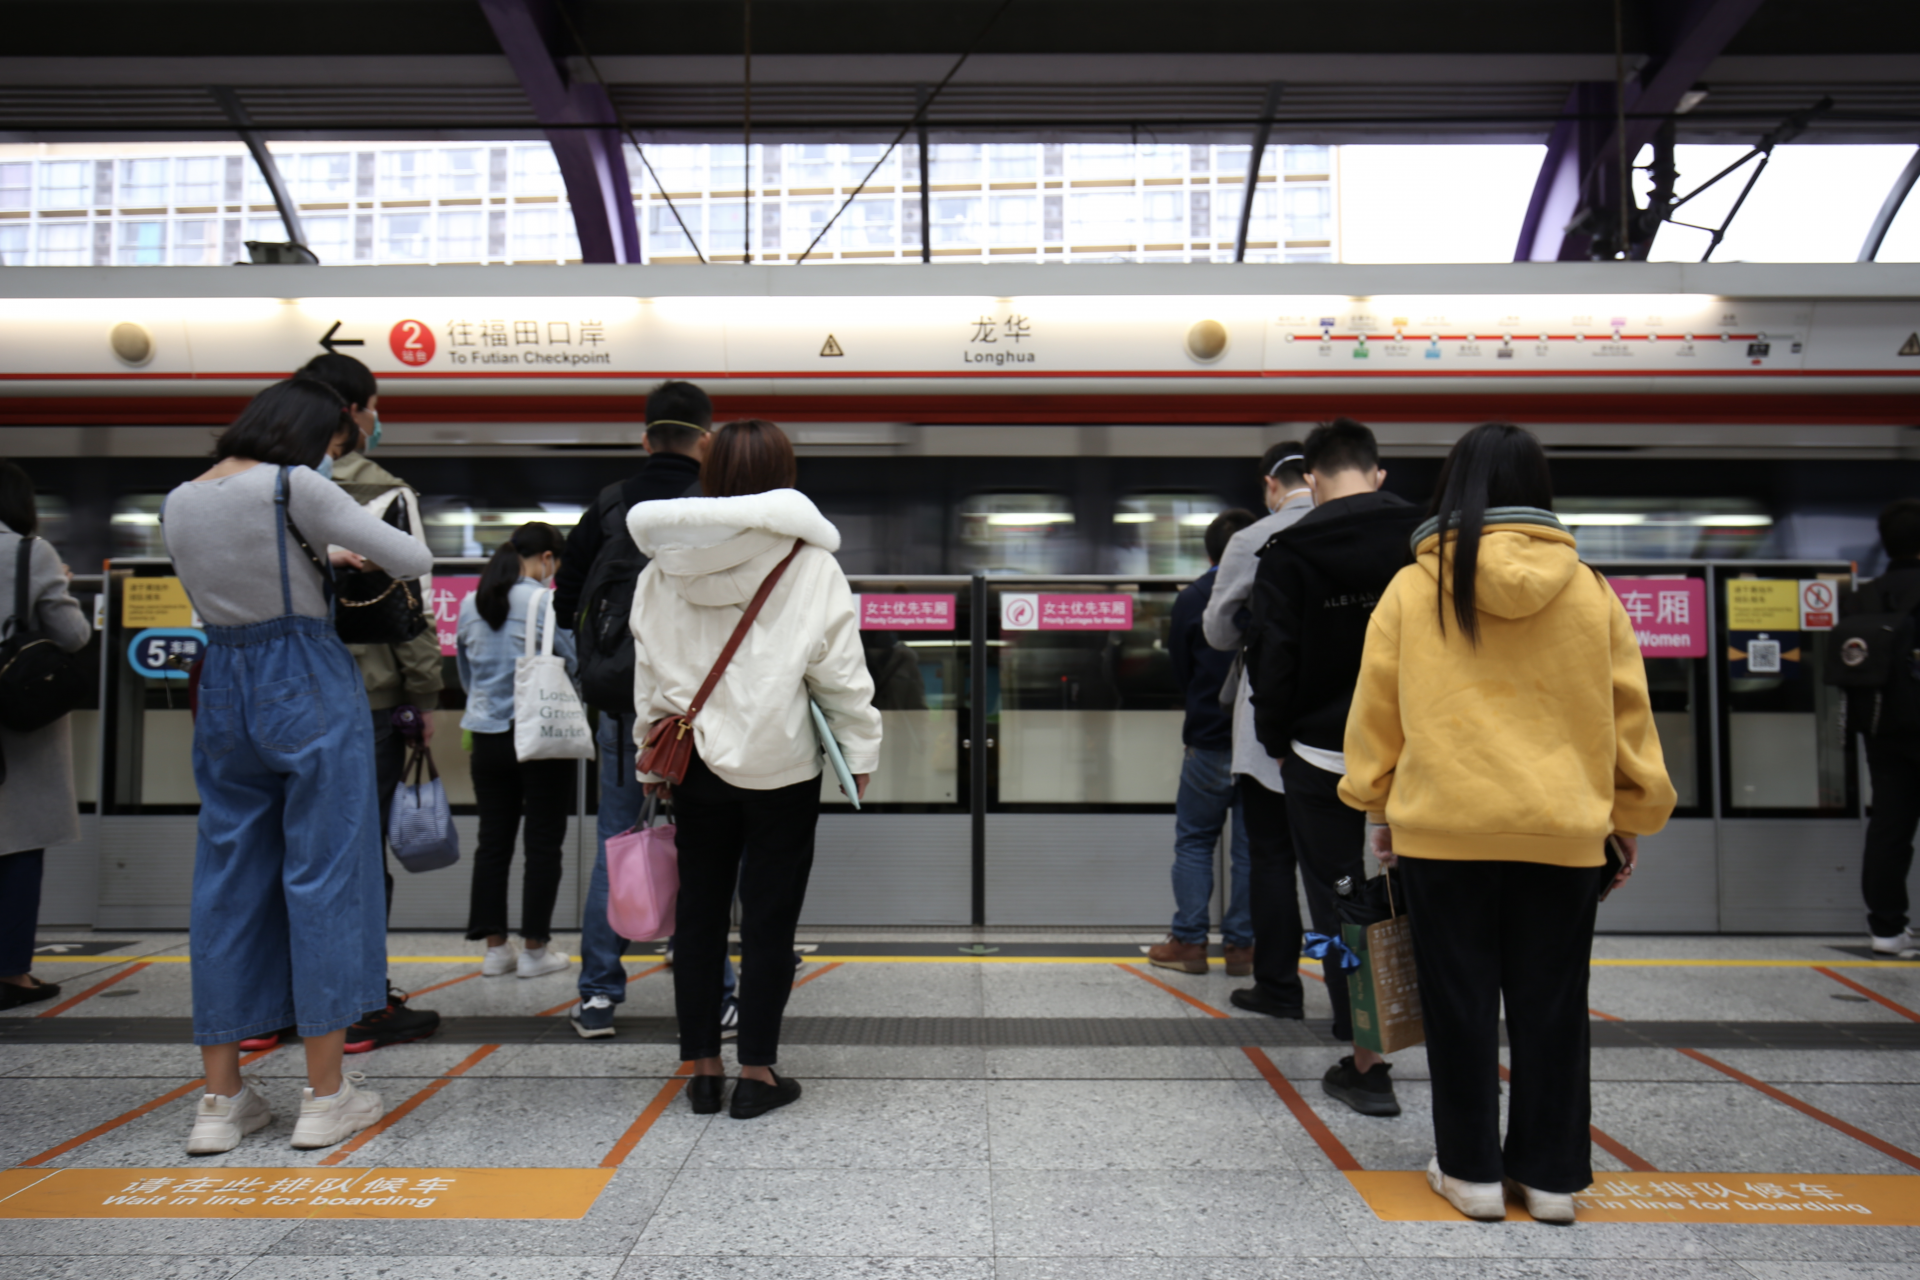 深圳地鐵路線圖2018年最新版本 出發前一定要Save低！ | 佬假期 LoHoliday